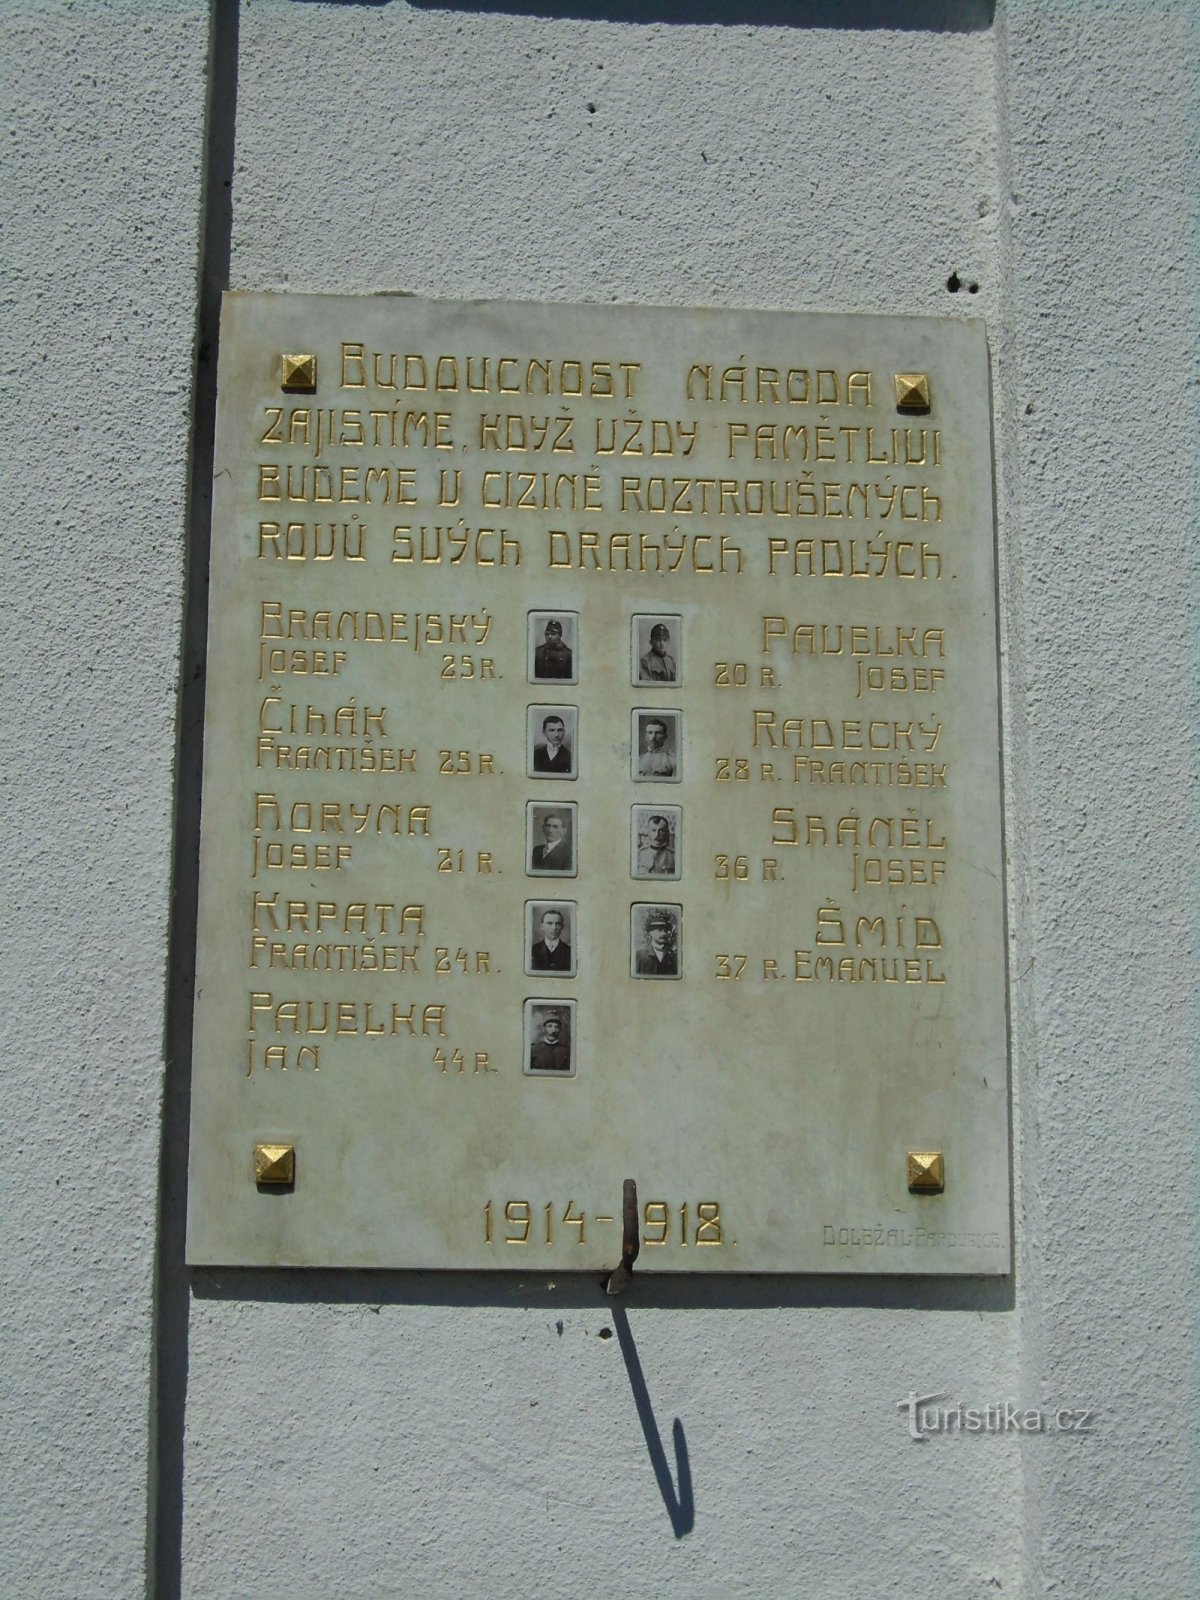 Tấm bảng tưởng niệm những người đã chết trong Chiến tranh thế giới thứ nhất (Graves, ngày 1 tháng 4.7.2018 năm XNUMX)